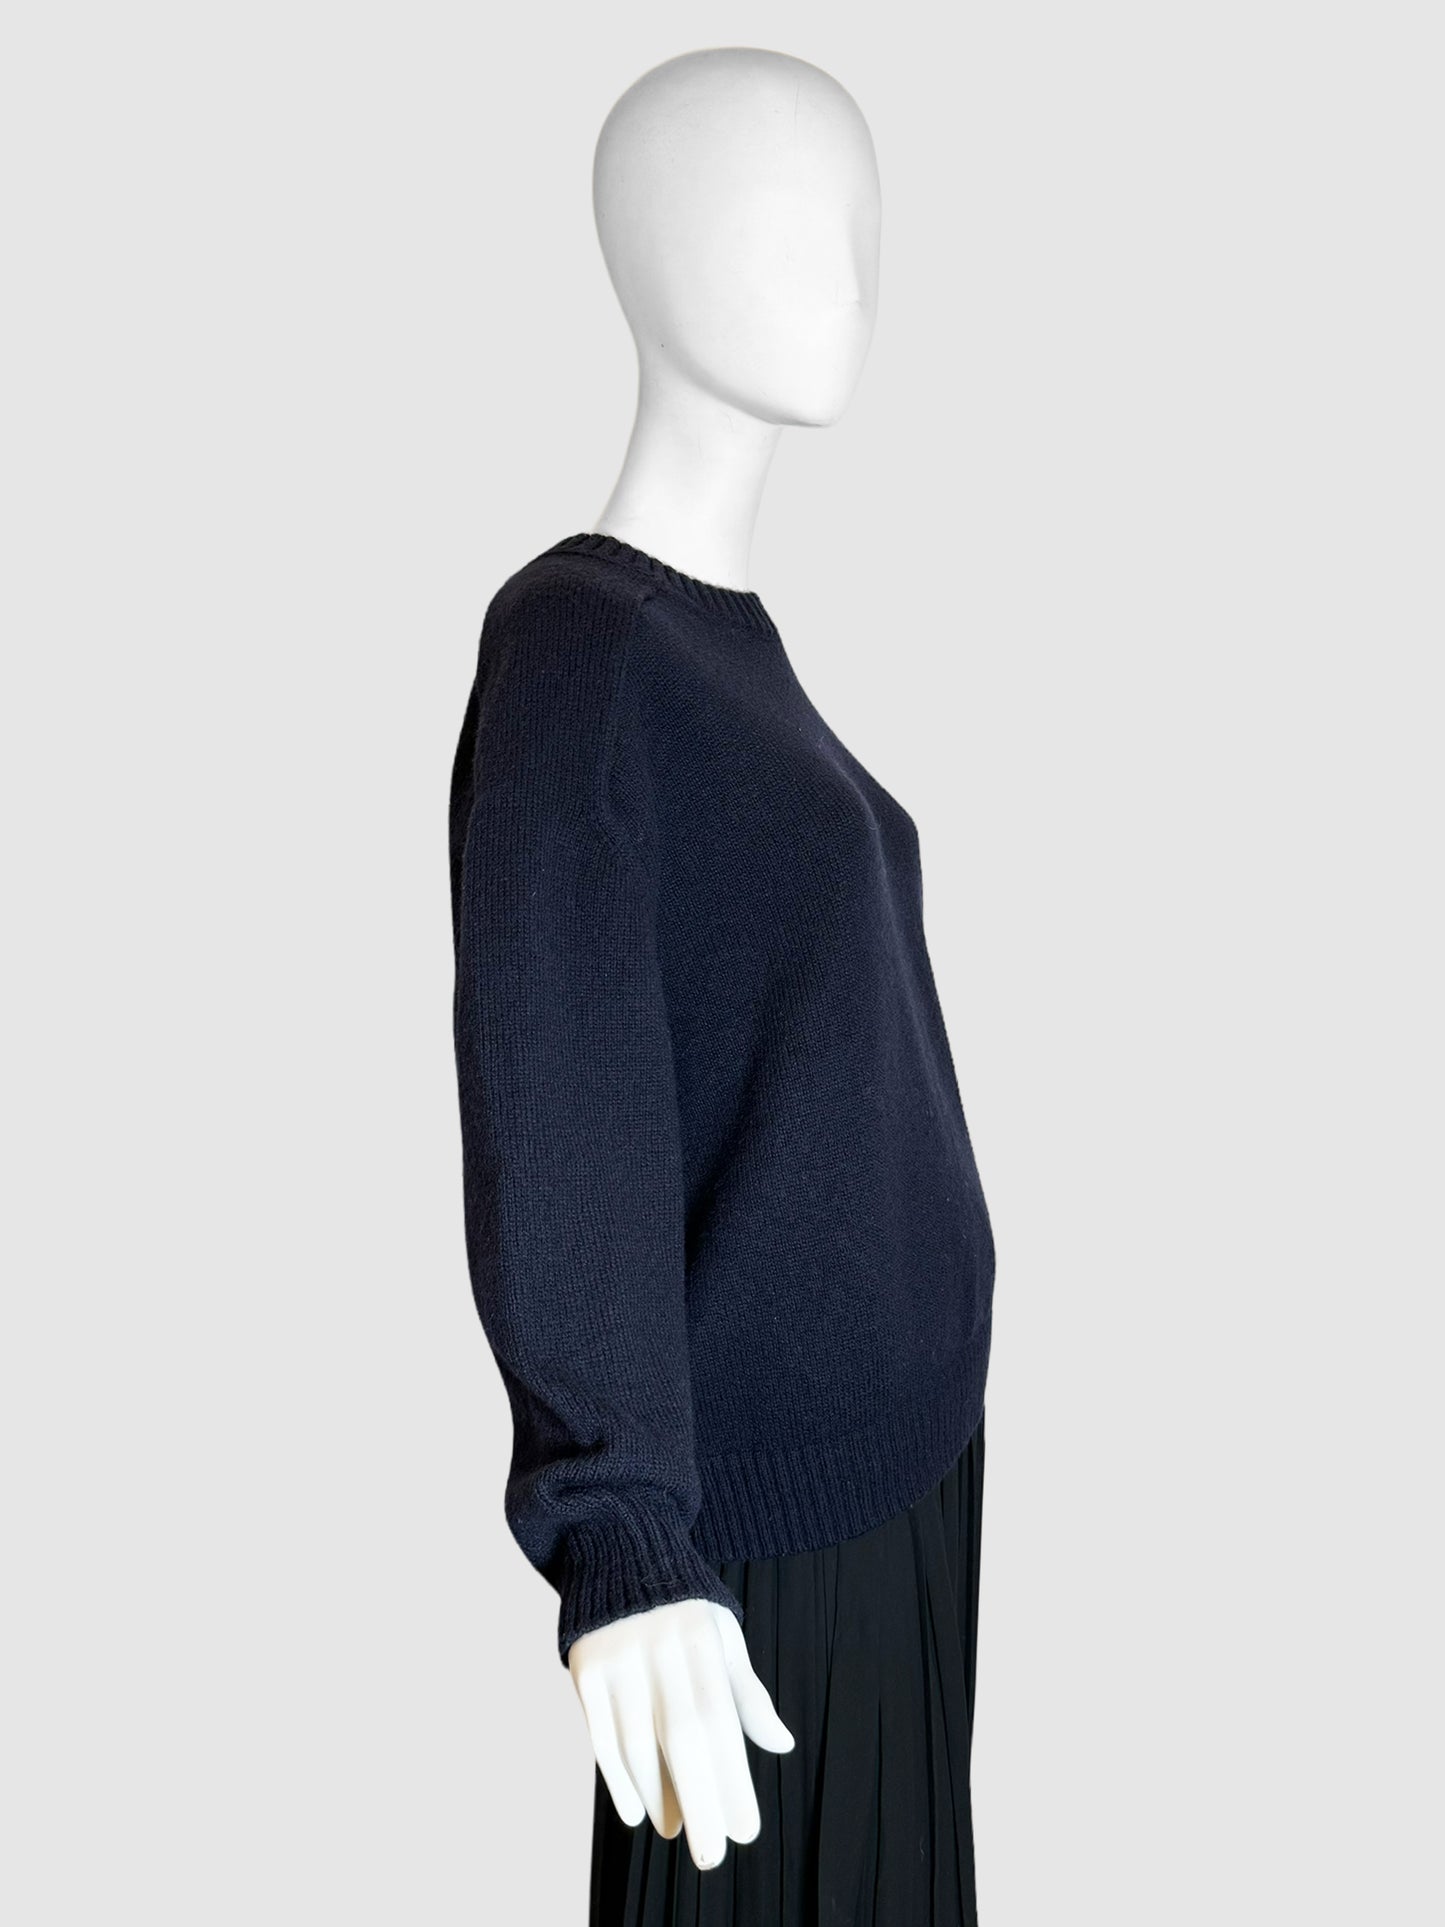 Crew Neck Sweater - Size XS